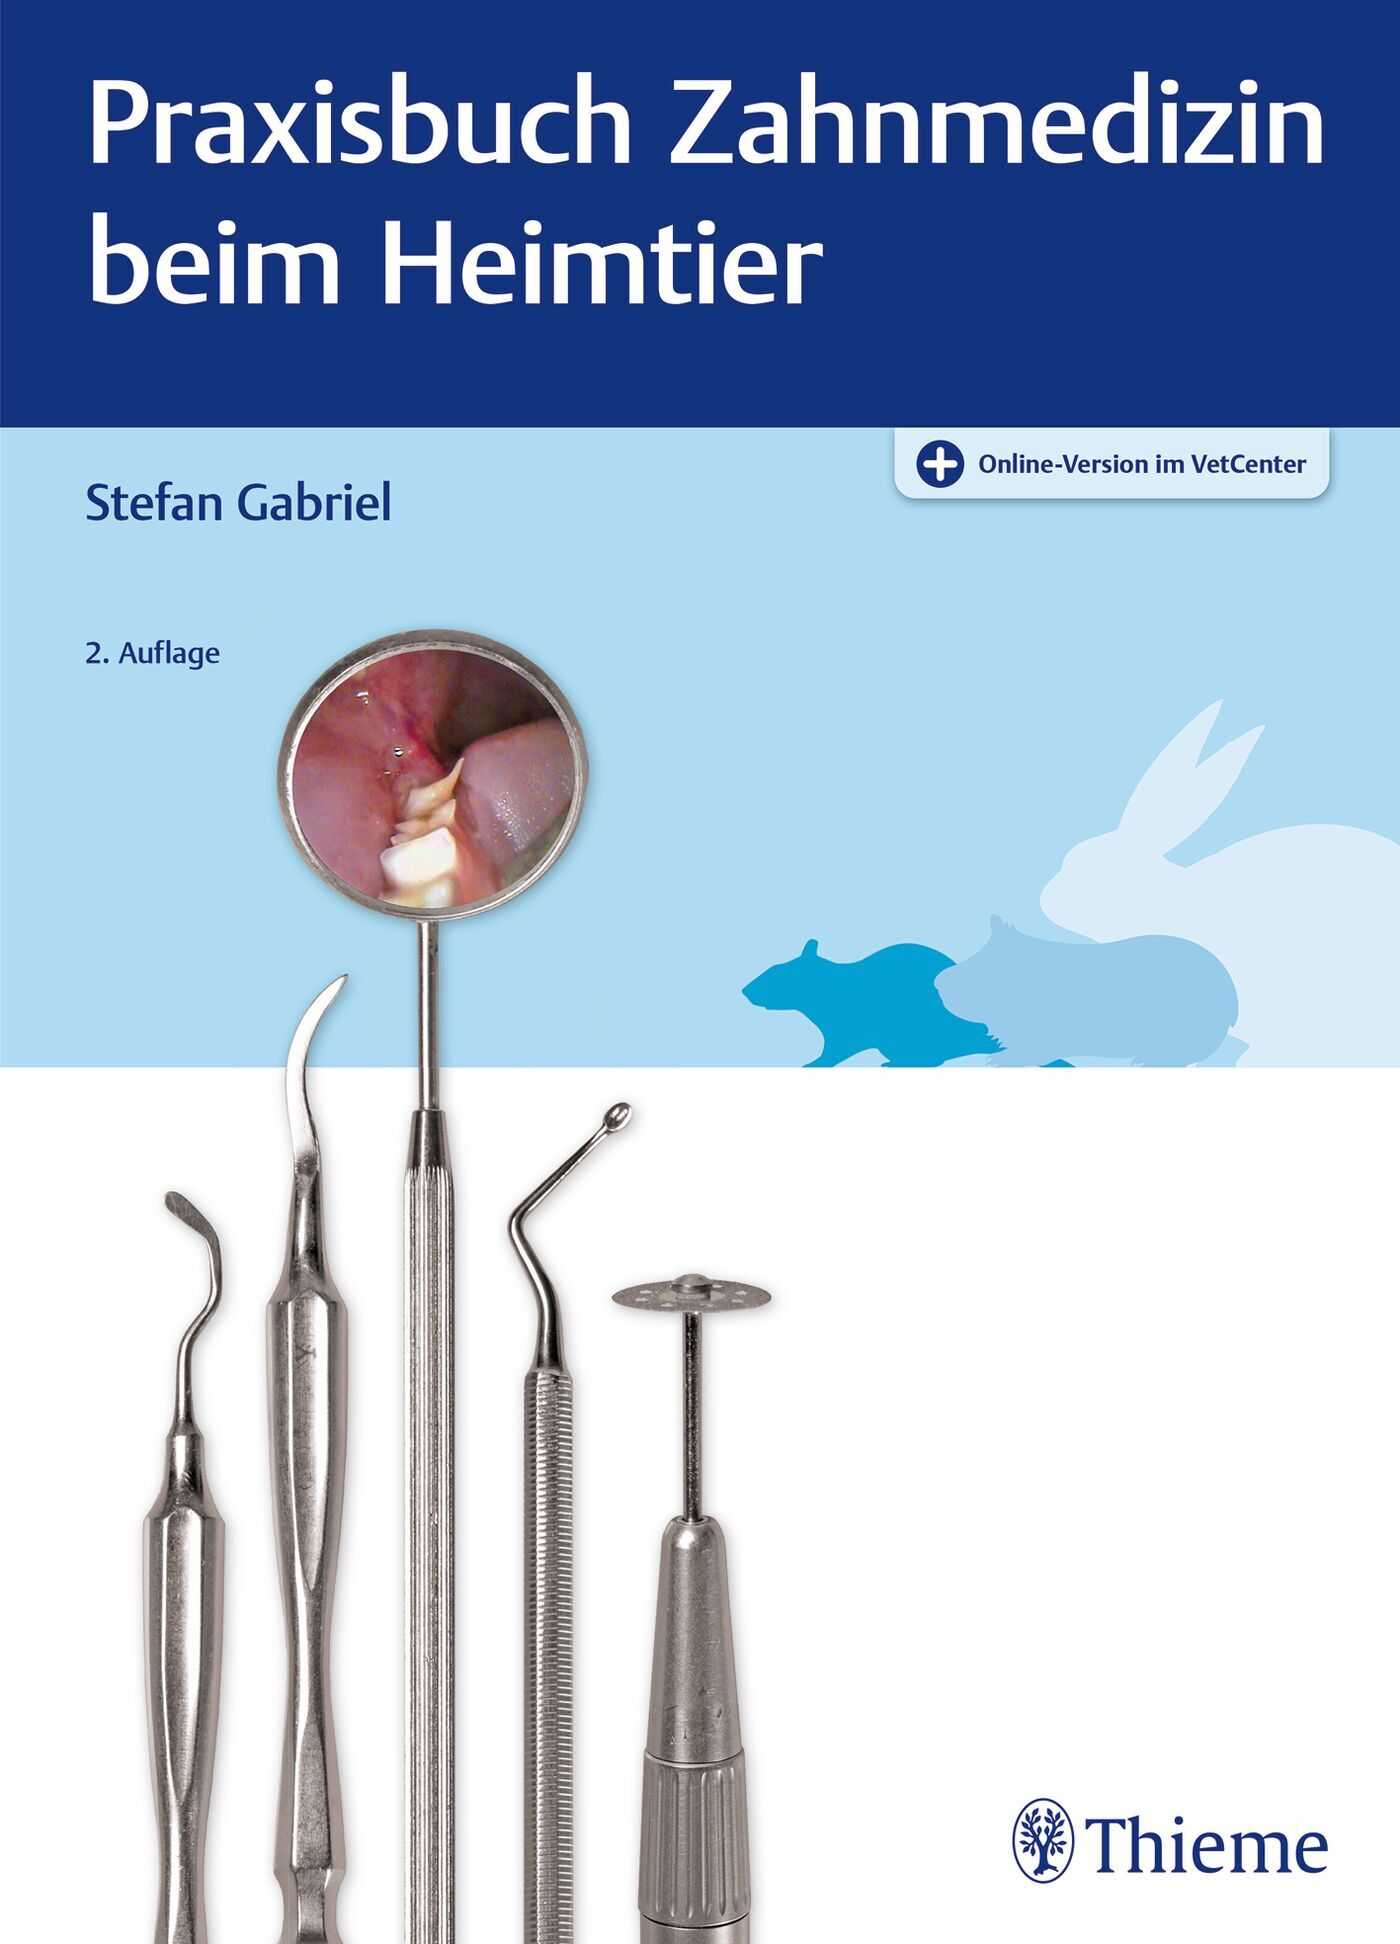 Praxisbuch Zahnmedizin beim Heimtier, 9783132447639